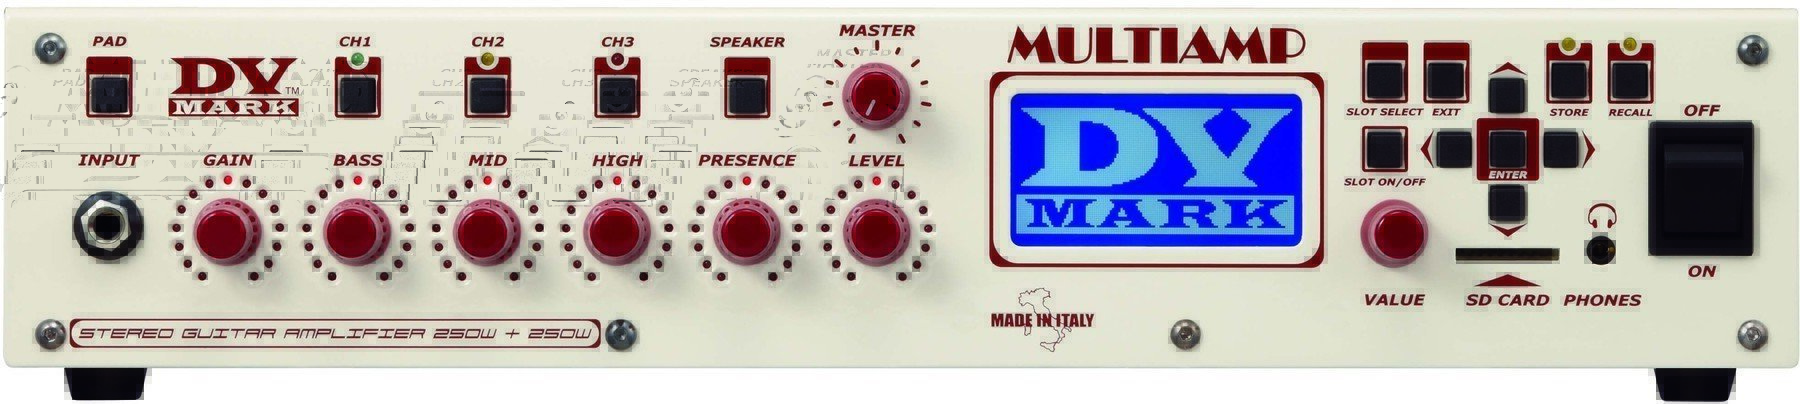 Modellering gitarrförstärkare DV Mark Multiamp Red